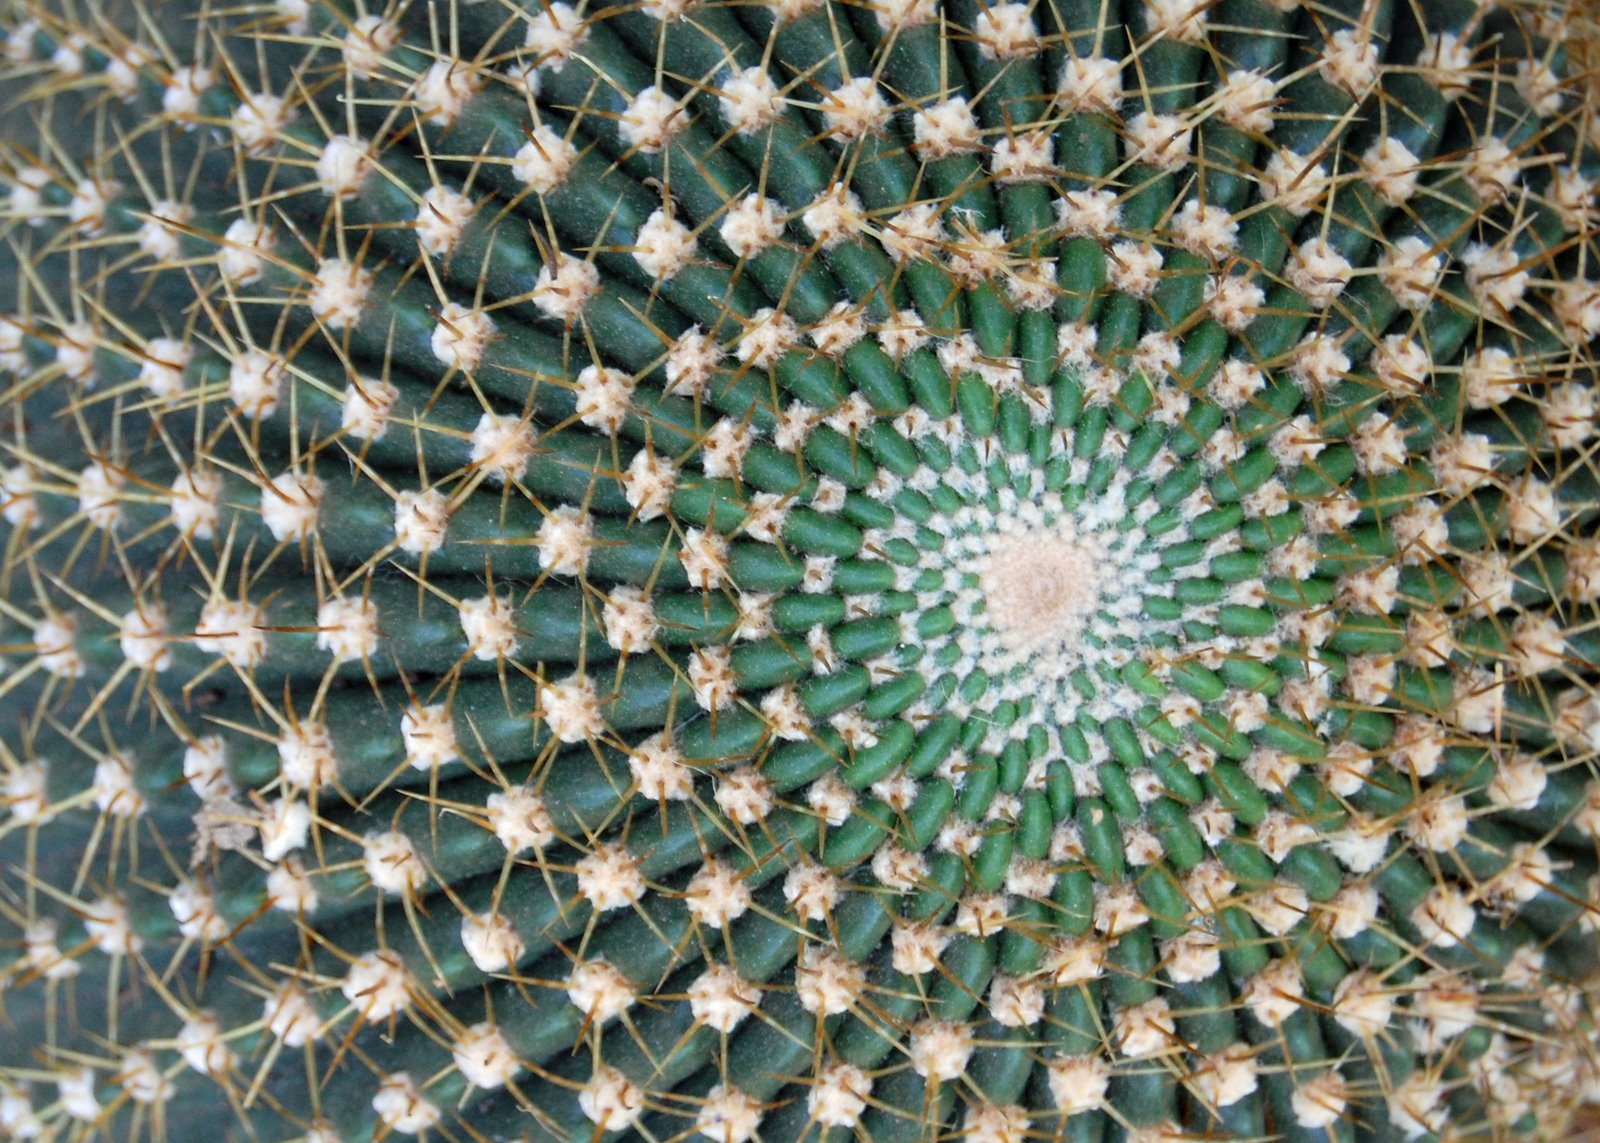 [cactus3.jpg]